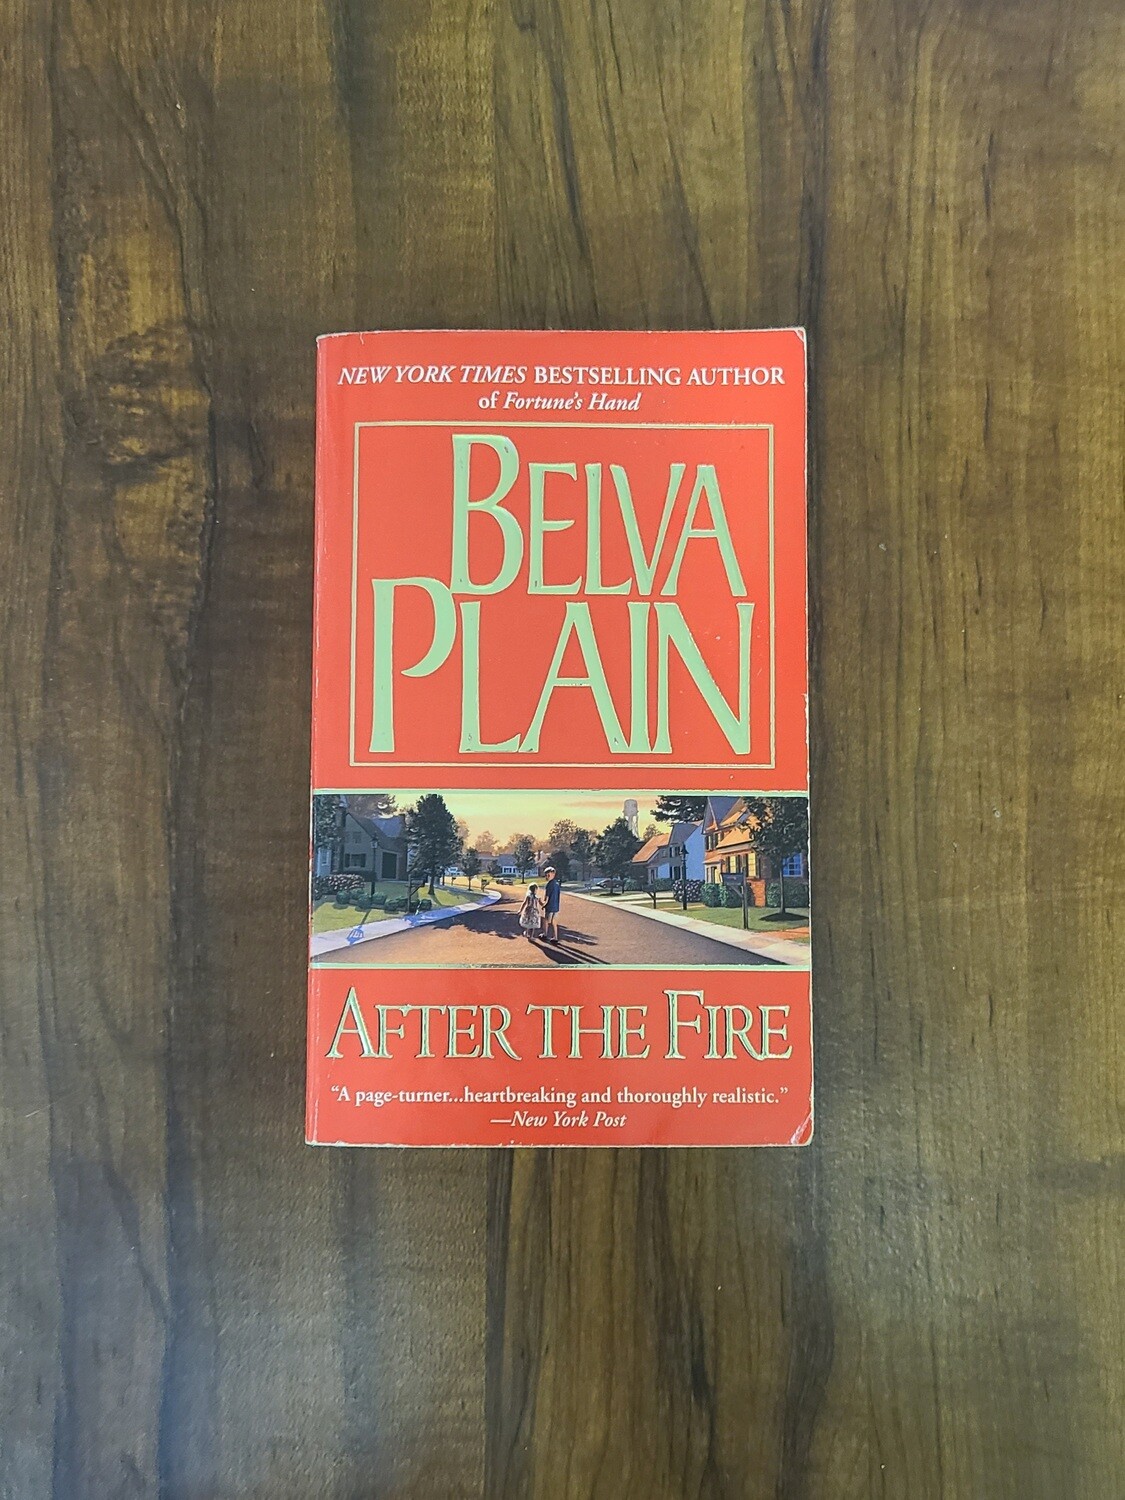 After the Fire by Belva Plain